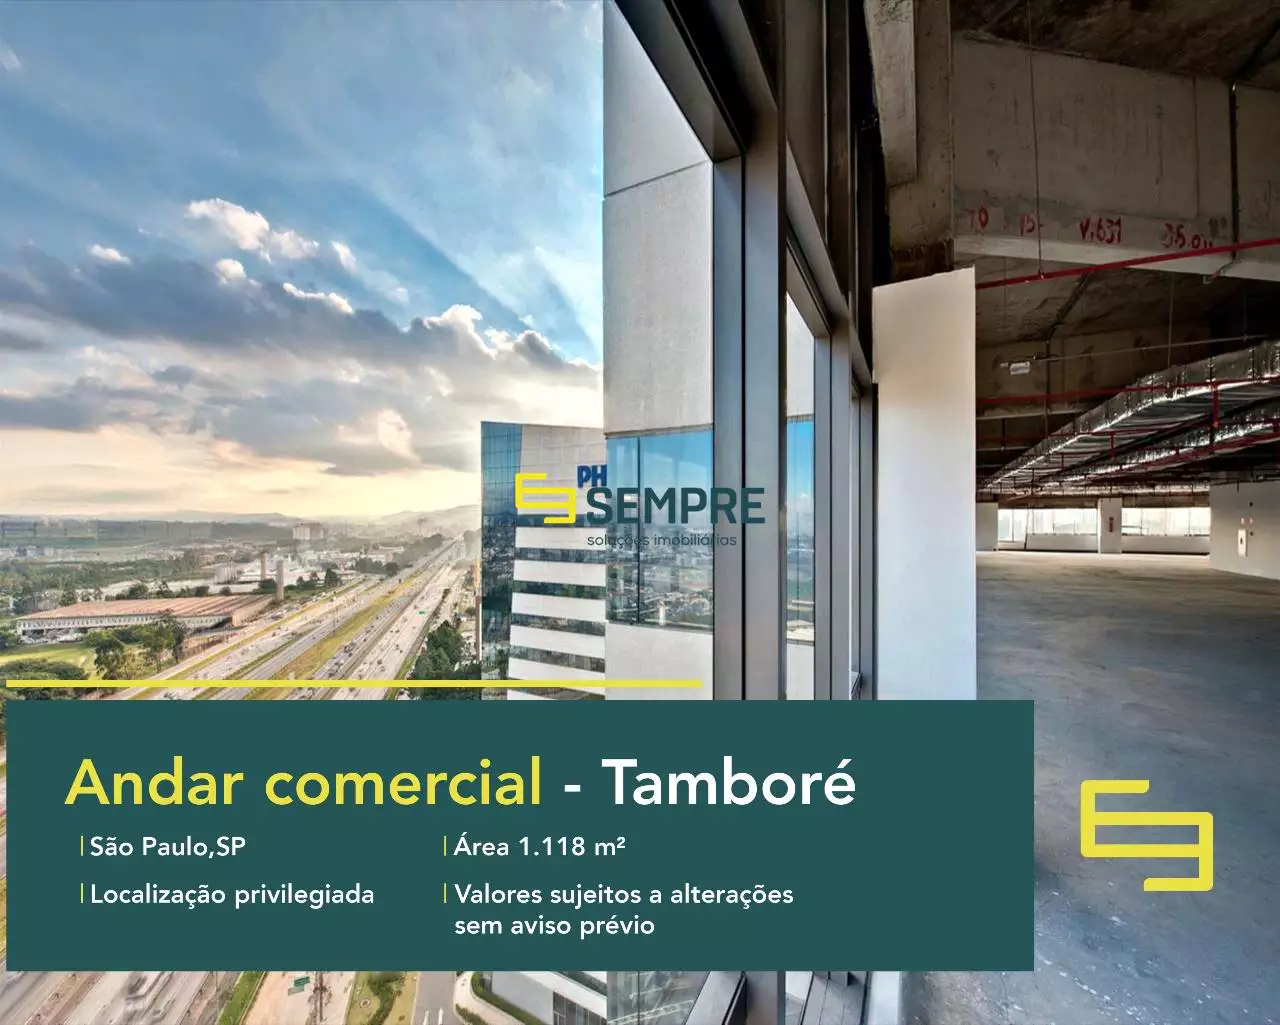 Laje corporativa em Tamboré para locação em São Paulo, excelente localização. O estabelecimento comercial conta com área de 1.118 m².